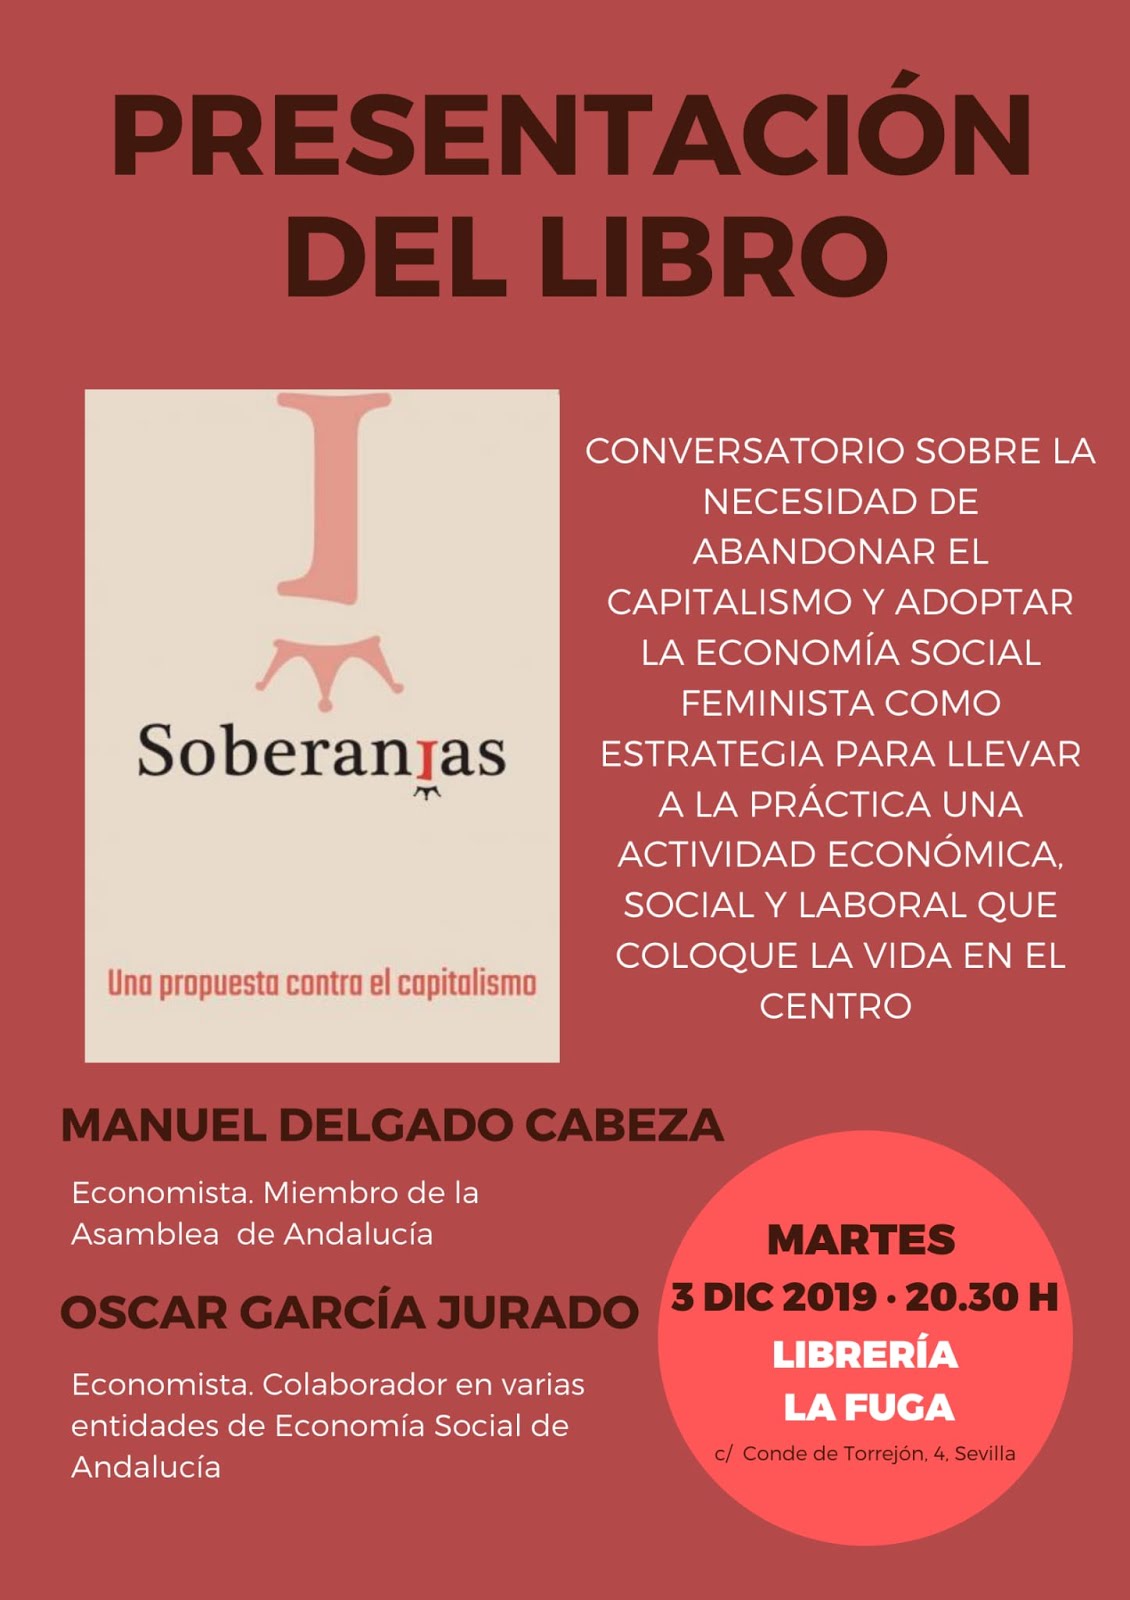 PRESENTACIÓN DEL LIBRO "SOBERANÍAS" en Sevilla